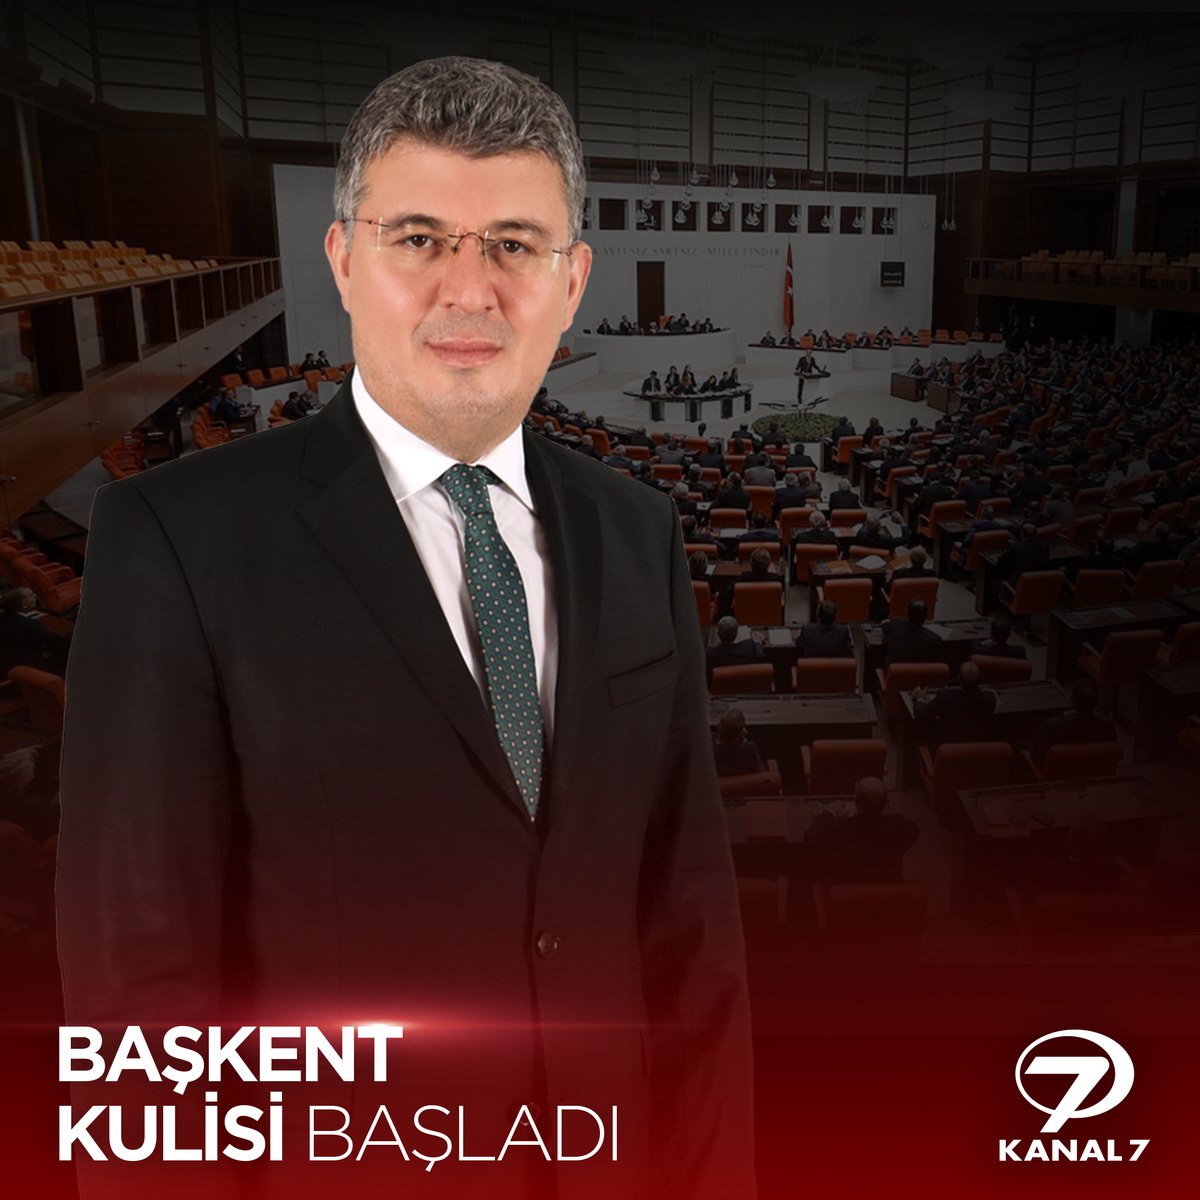 ➡️ TBMM AK Parti Grup Başkanı Abdullah Güler Başkent Kulisi’nde merak edilenleri cevaplıyor.
Başkent Kulisi şimdi Kanal 7'de. 

#kanal7 #başkentkulisi  #mehmetacet